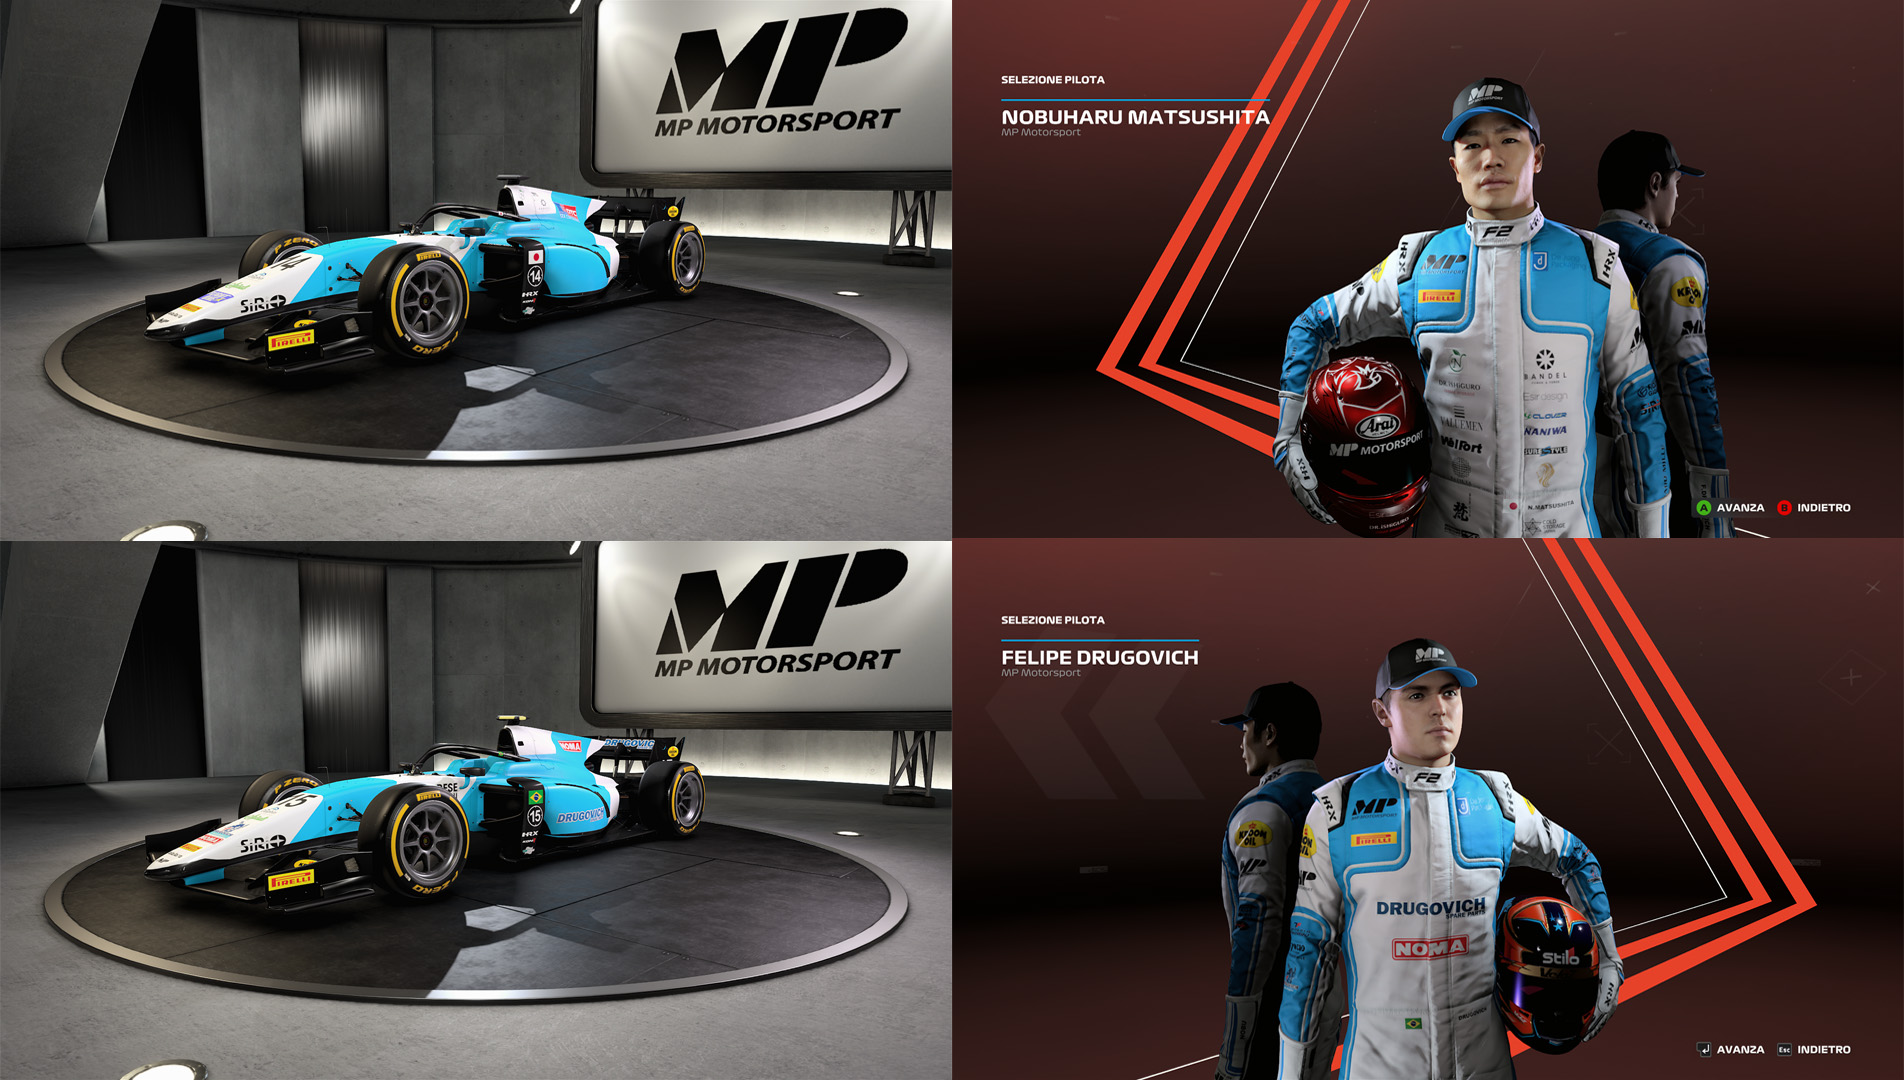 00 - MP Motorsport.jpg